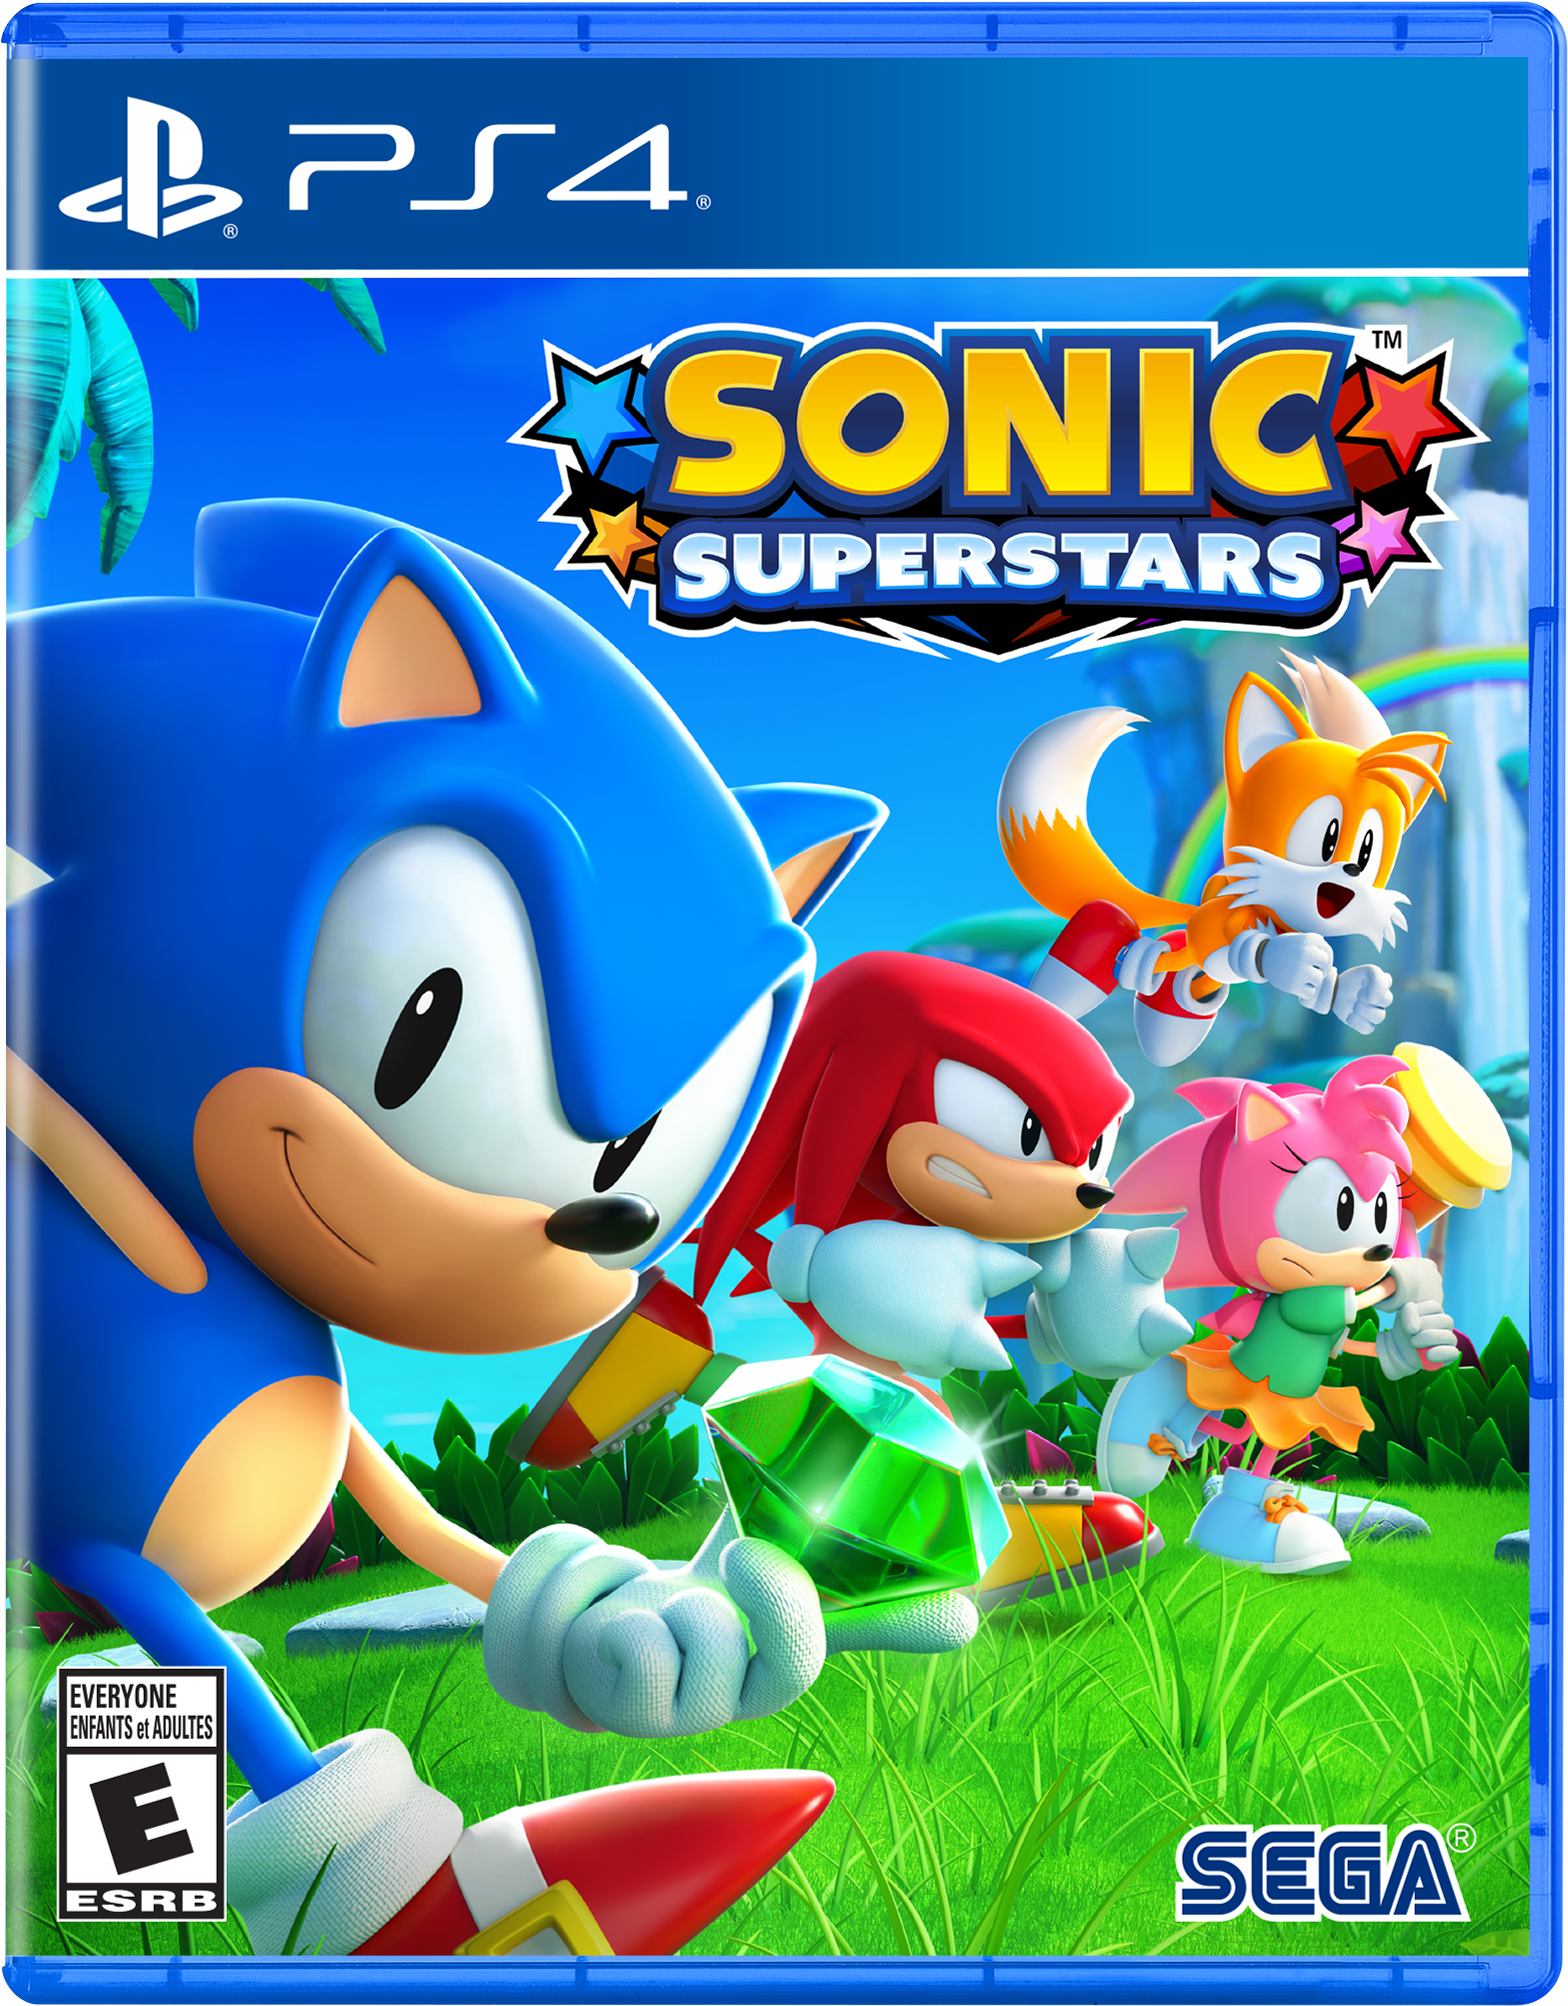 Pacote de games de Sonic está disponível em bundle a partir de US